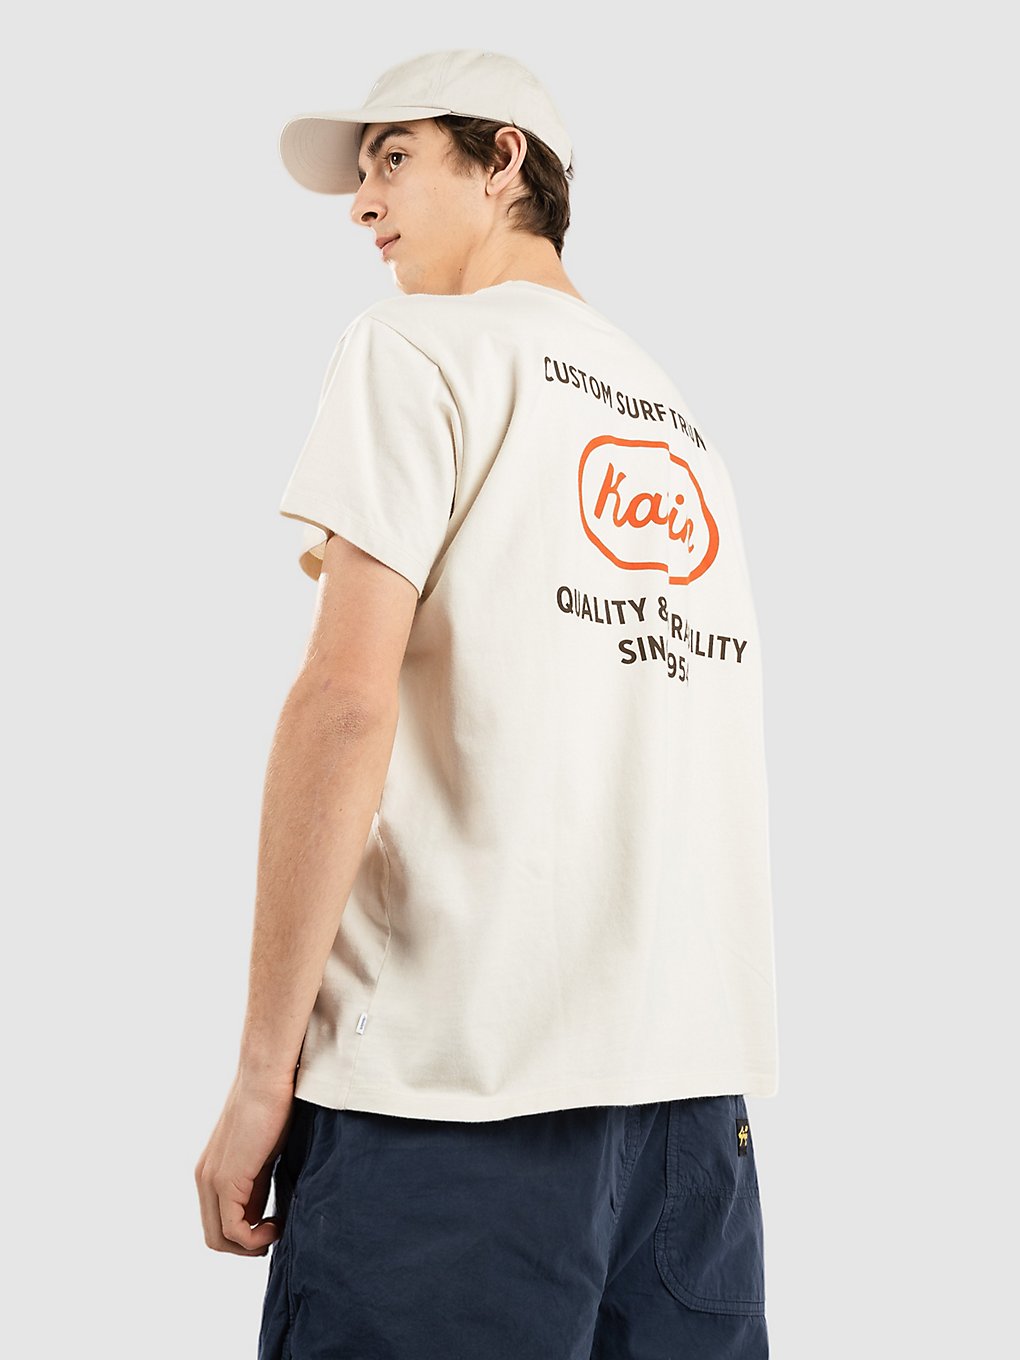 Katin USA Built T-Shirt wit